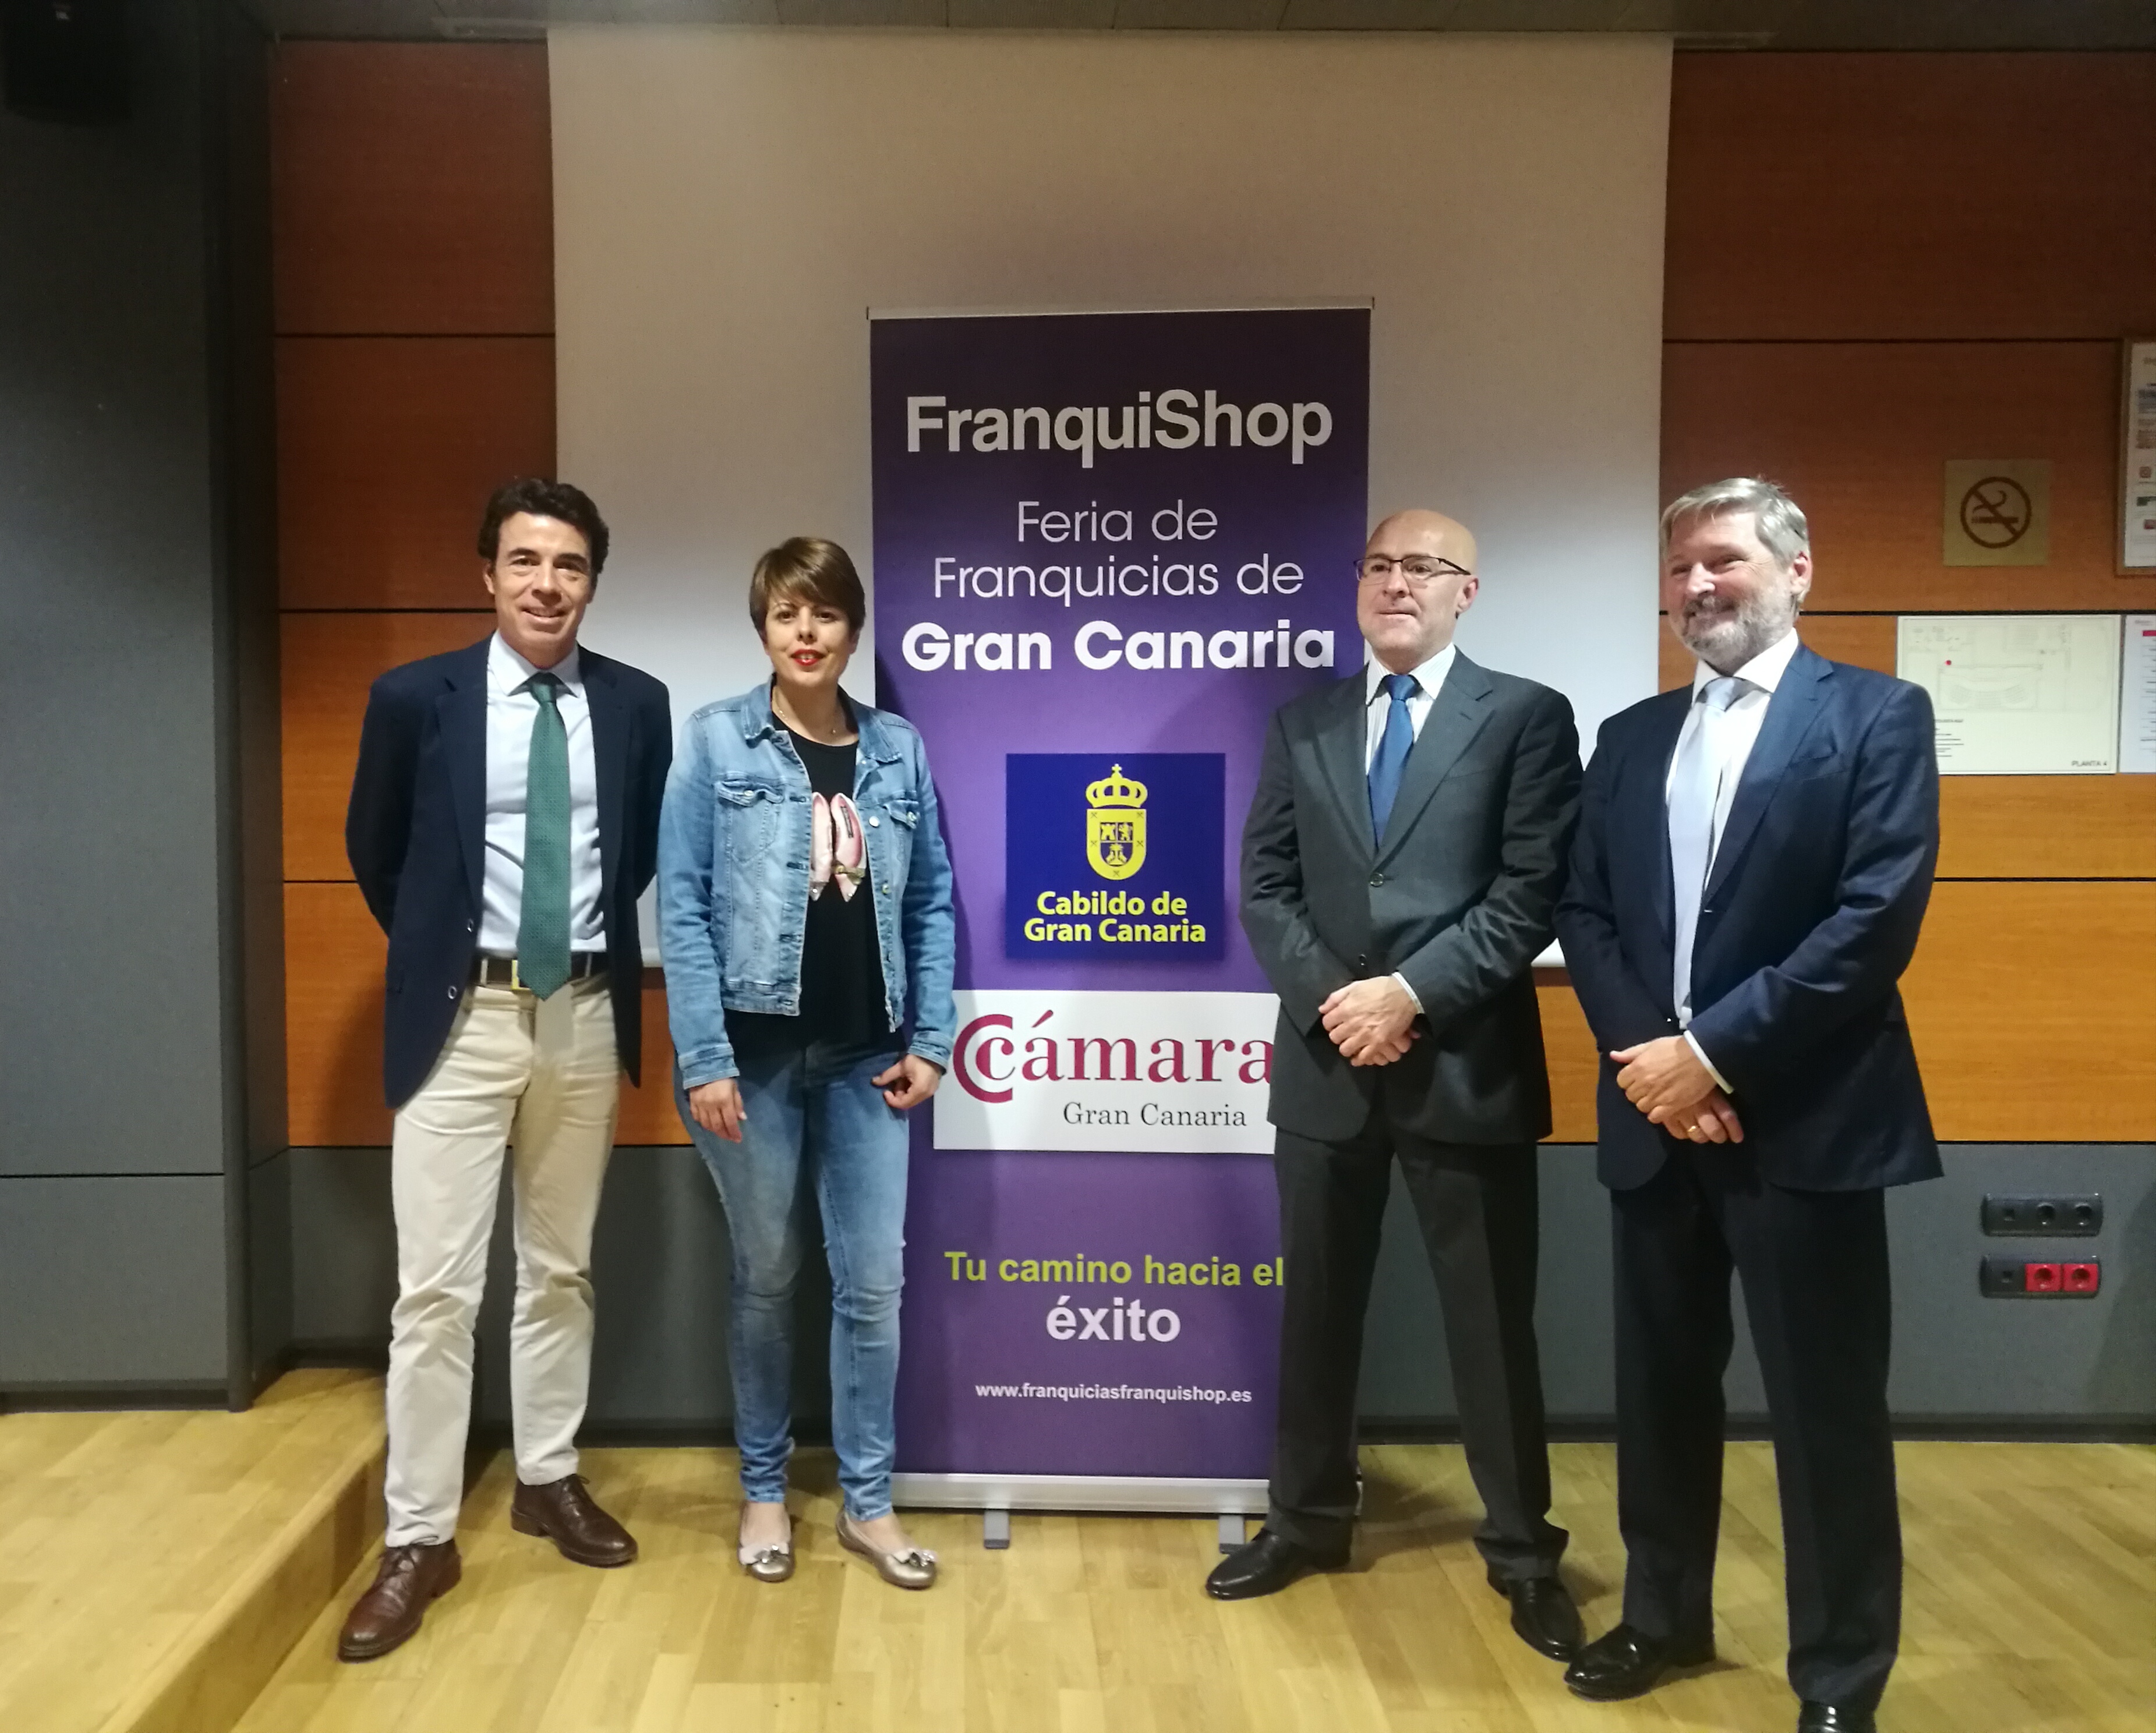  FranquiShop Gran Canaria celebra la segunda edición con más de 350 inscritos y 35 marcas participantes